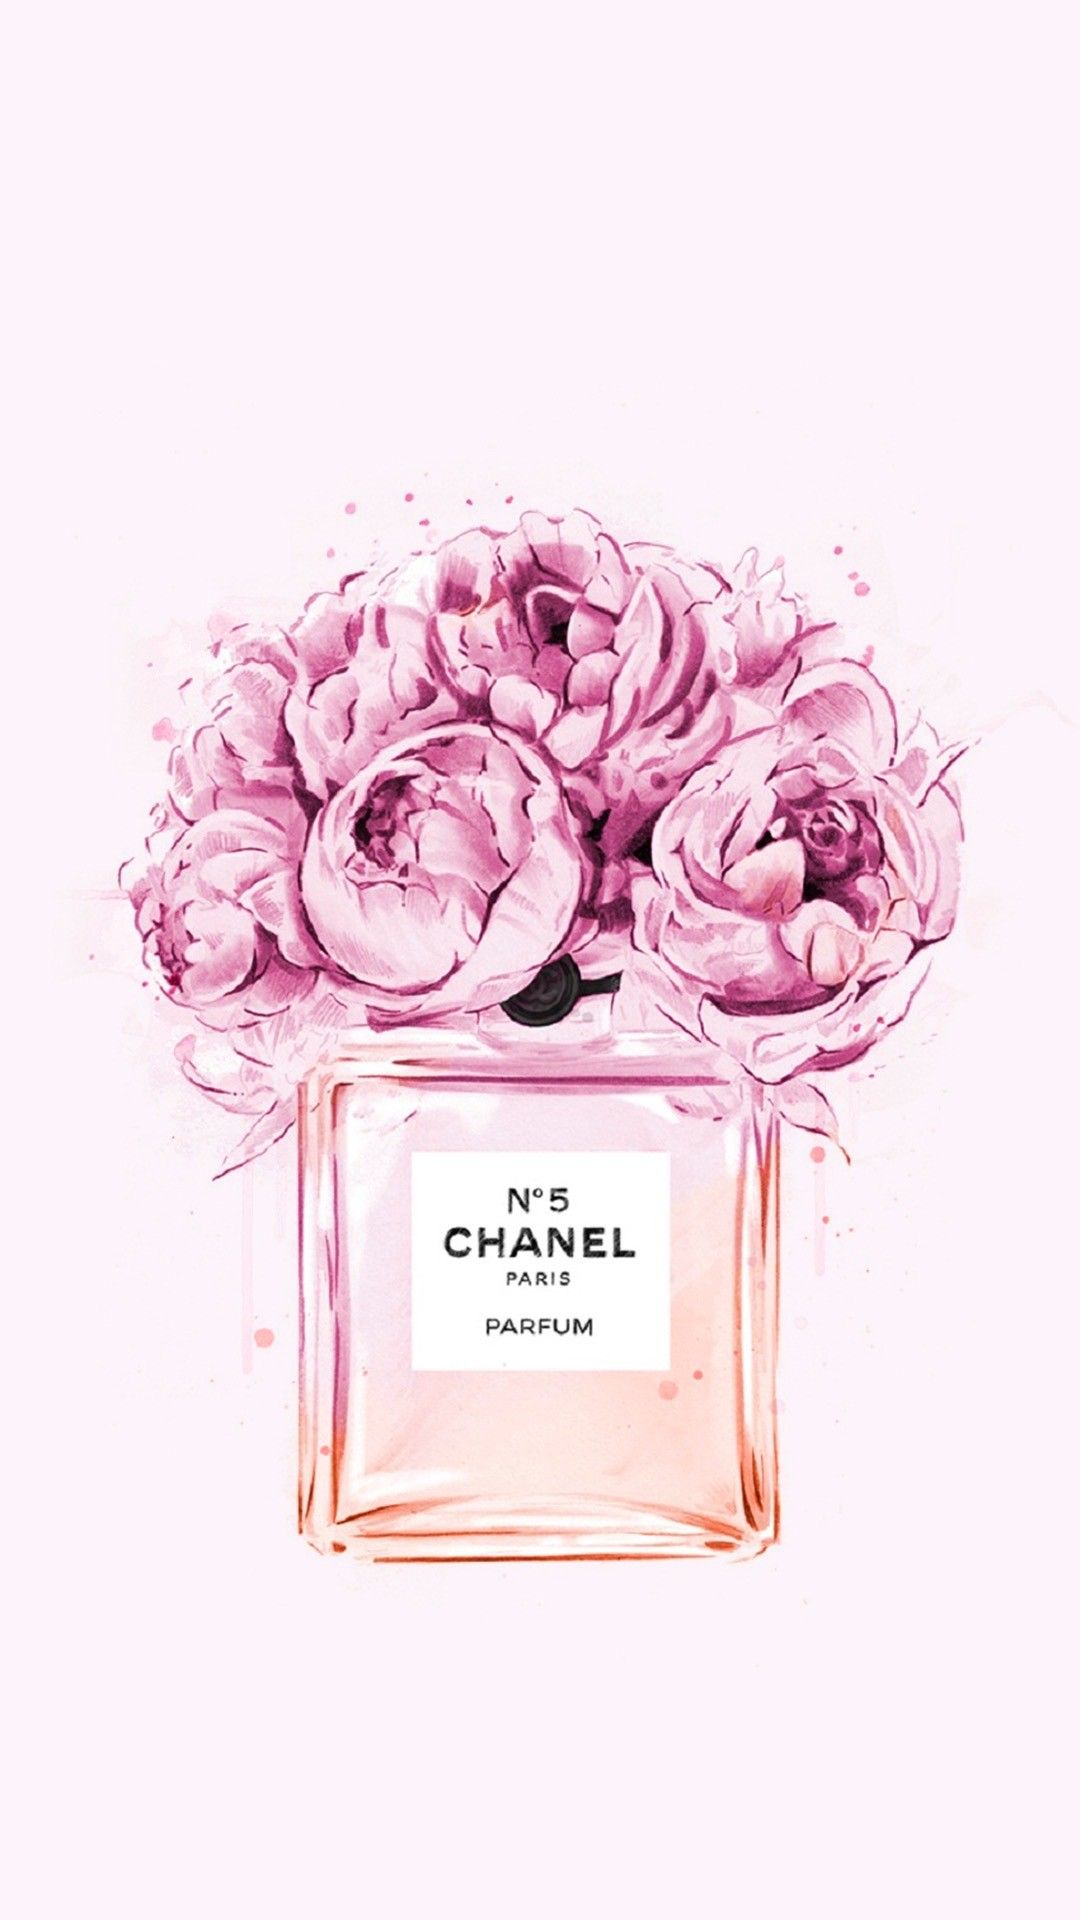 Chanel: Hãy thử sức với sự thời trang cổ điển với mẫu Chanel mới nhất. Từ phong cách thanh lịch đến kiểu dáng thời thượng, các thiết kế của hãng sẽ đem đến cho bạn sự tinh tế chỉ có ở Chanel.